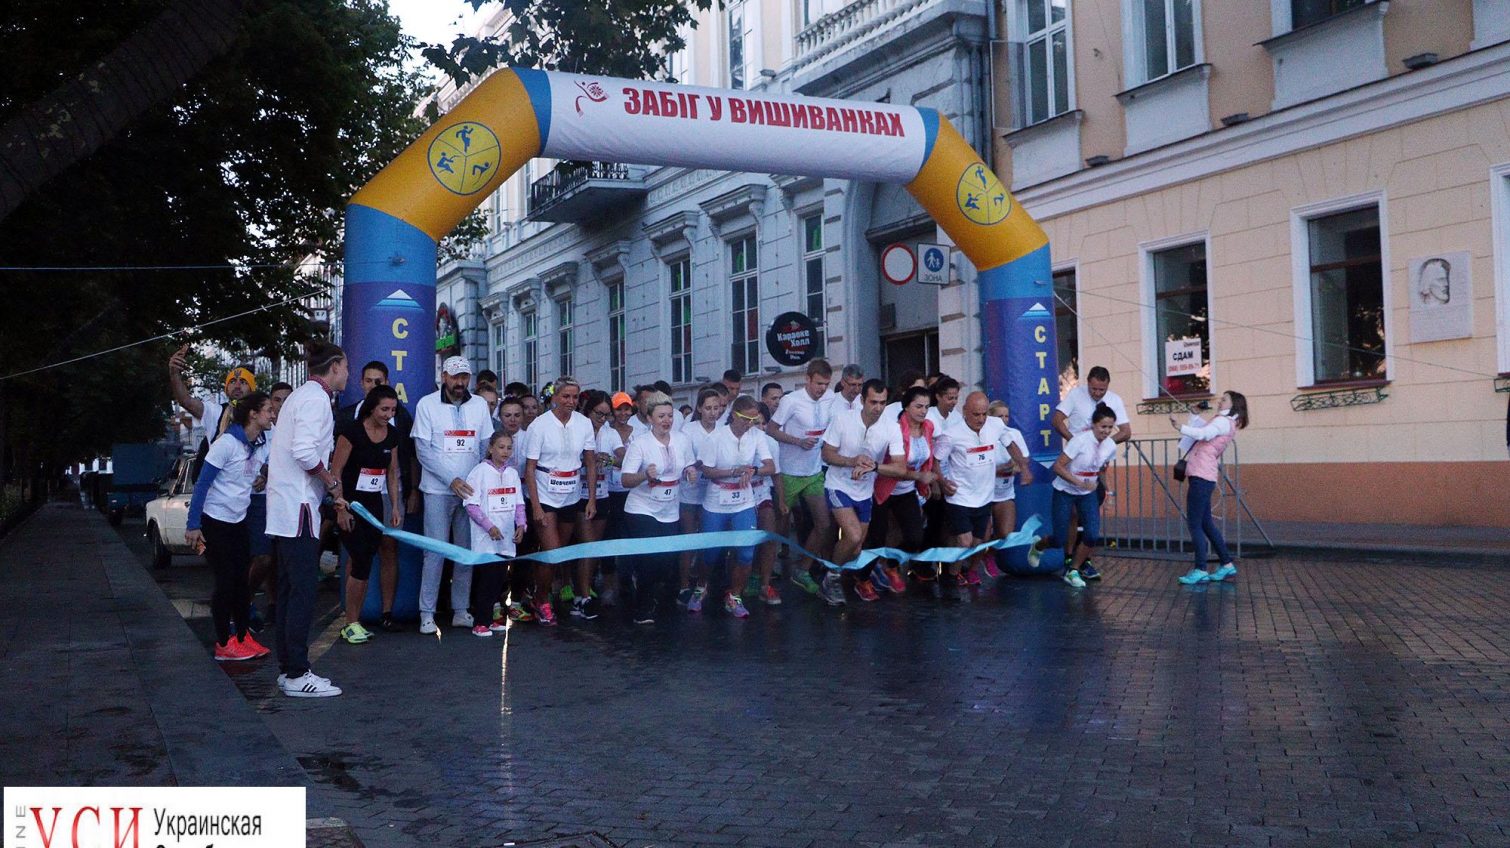 2,5 км в вышиванках: в Одессе прошел праздничный забег (фоторепортаж) «фото»